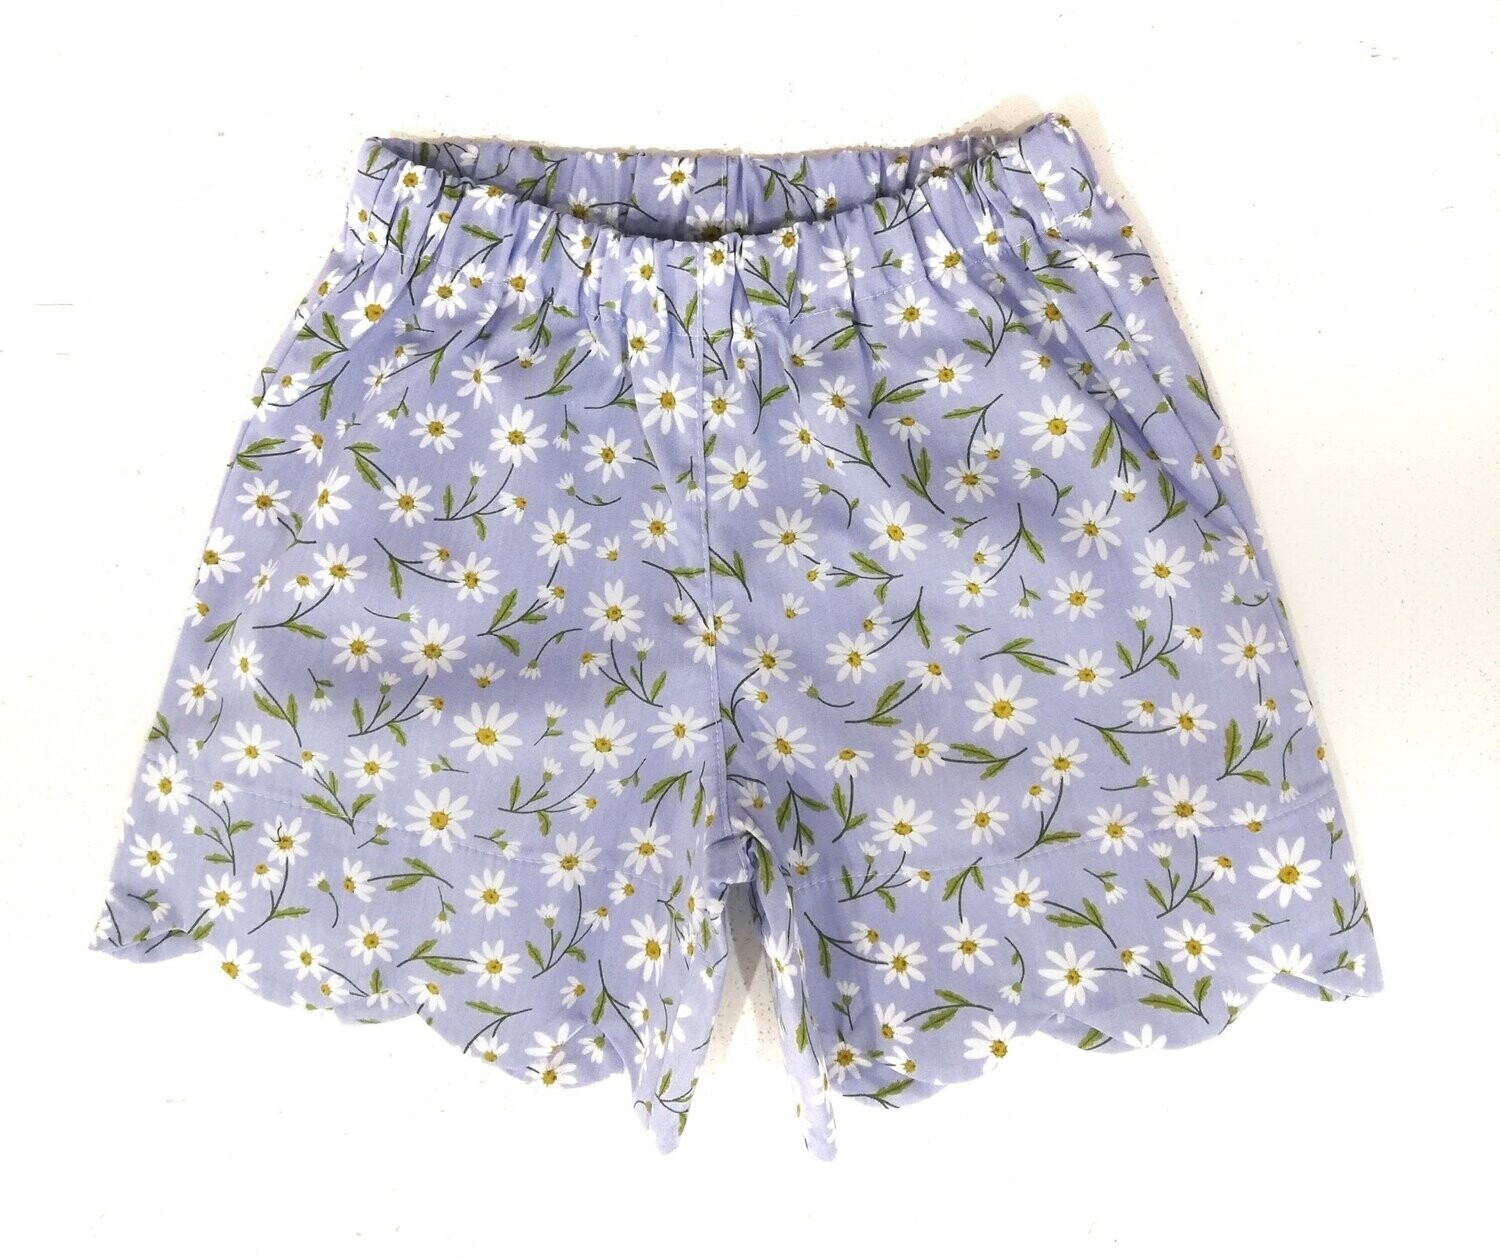 Per Te - Shorts in cotone lilla con margherite, Size: 6 mesi